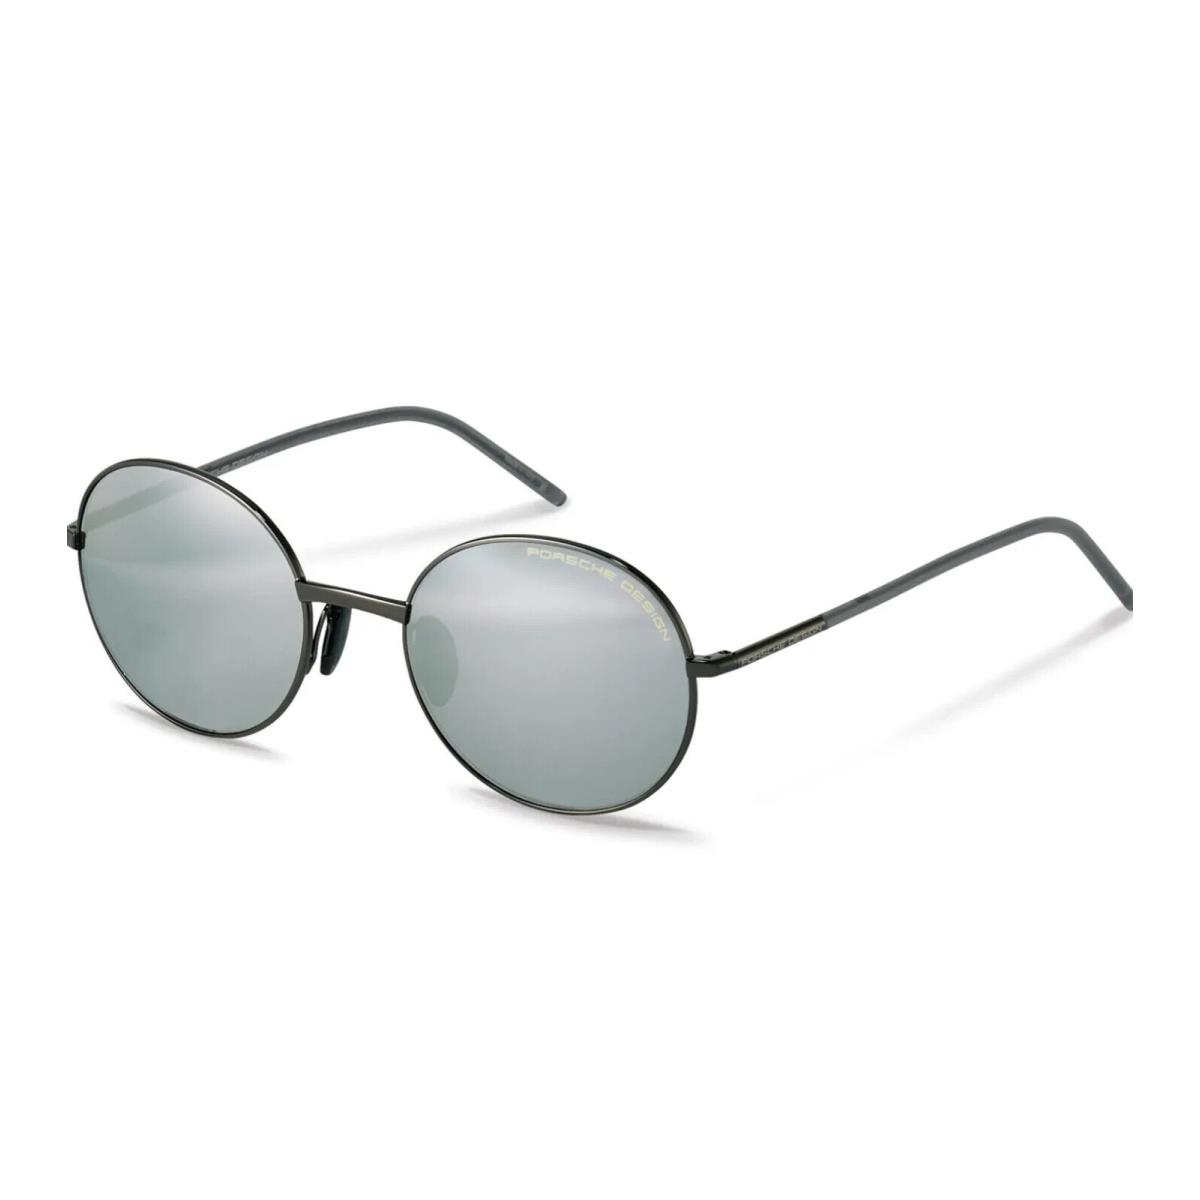 Porsche Design Grey Round Mirror Titanium Sunglasses P8631 B Grey w/ Case